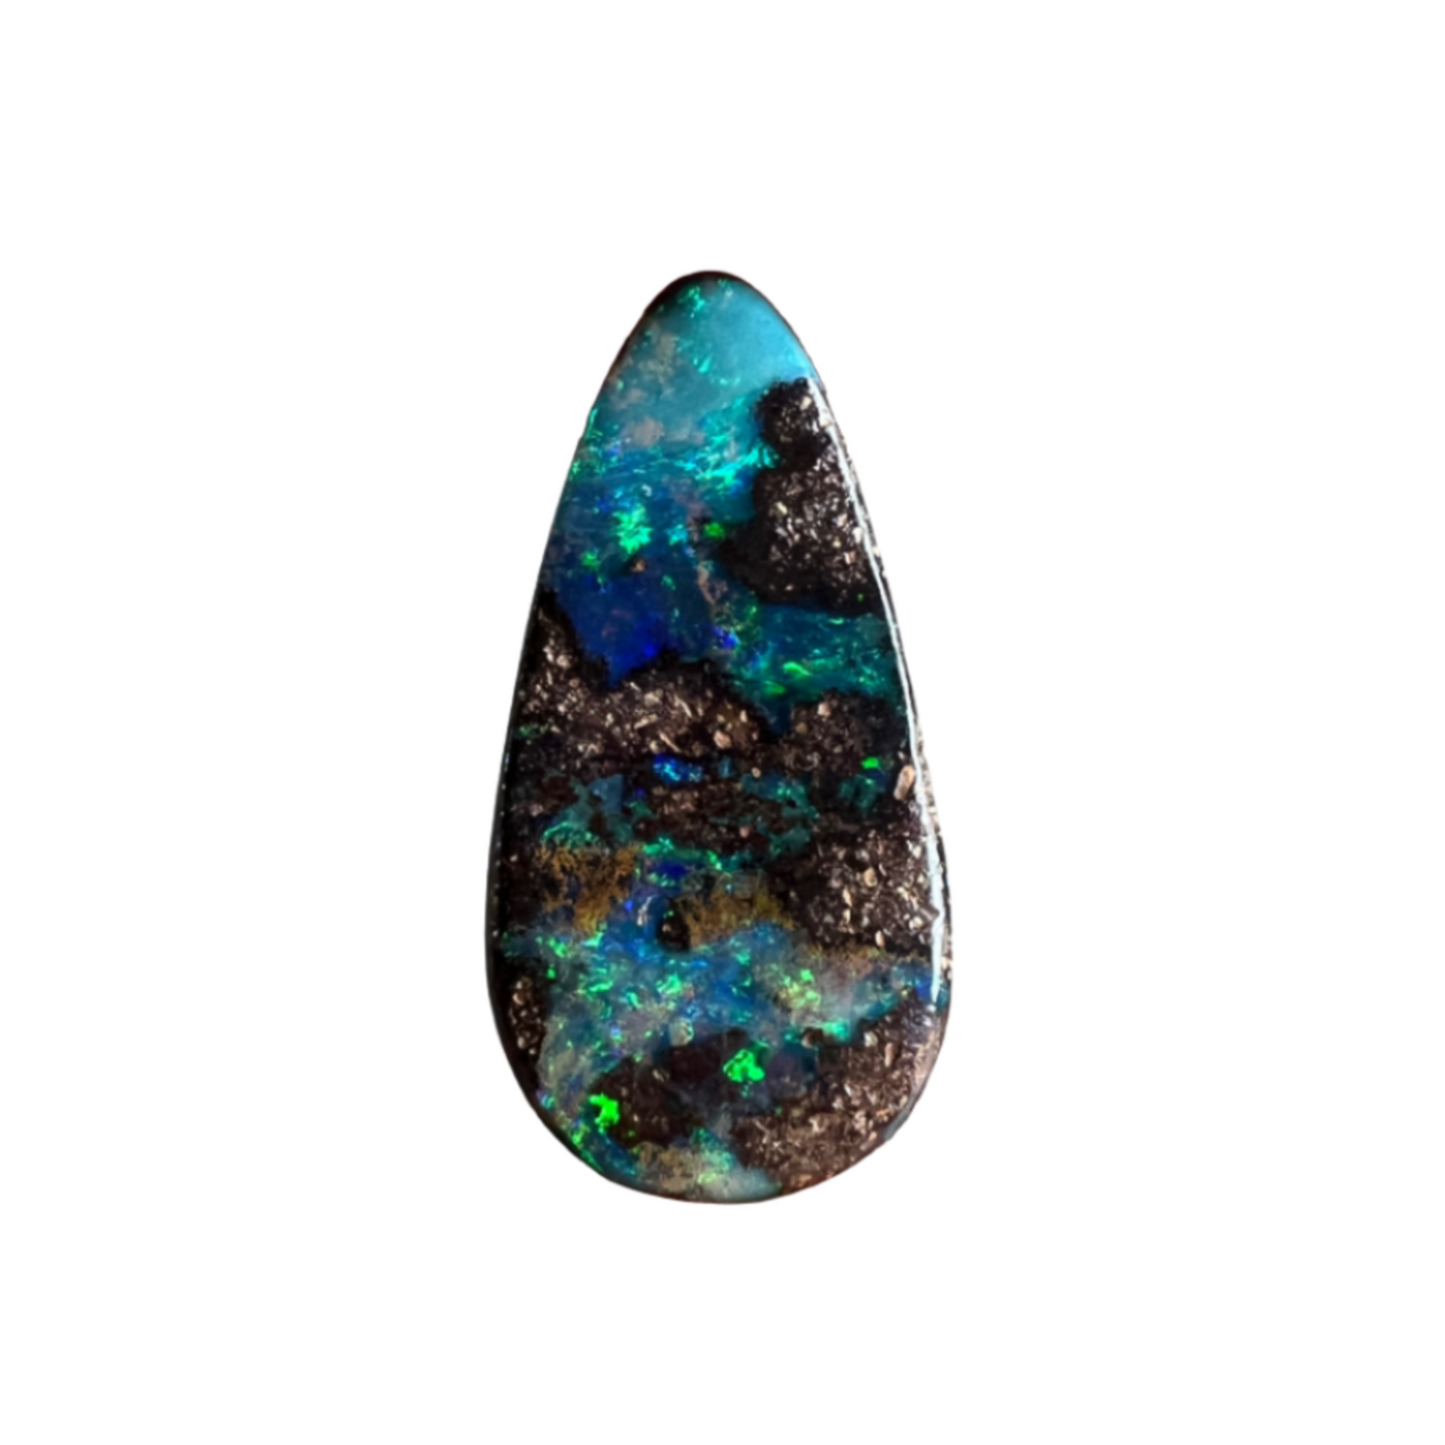 5.09 Ct teardrop boulder opal